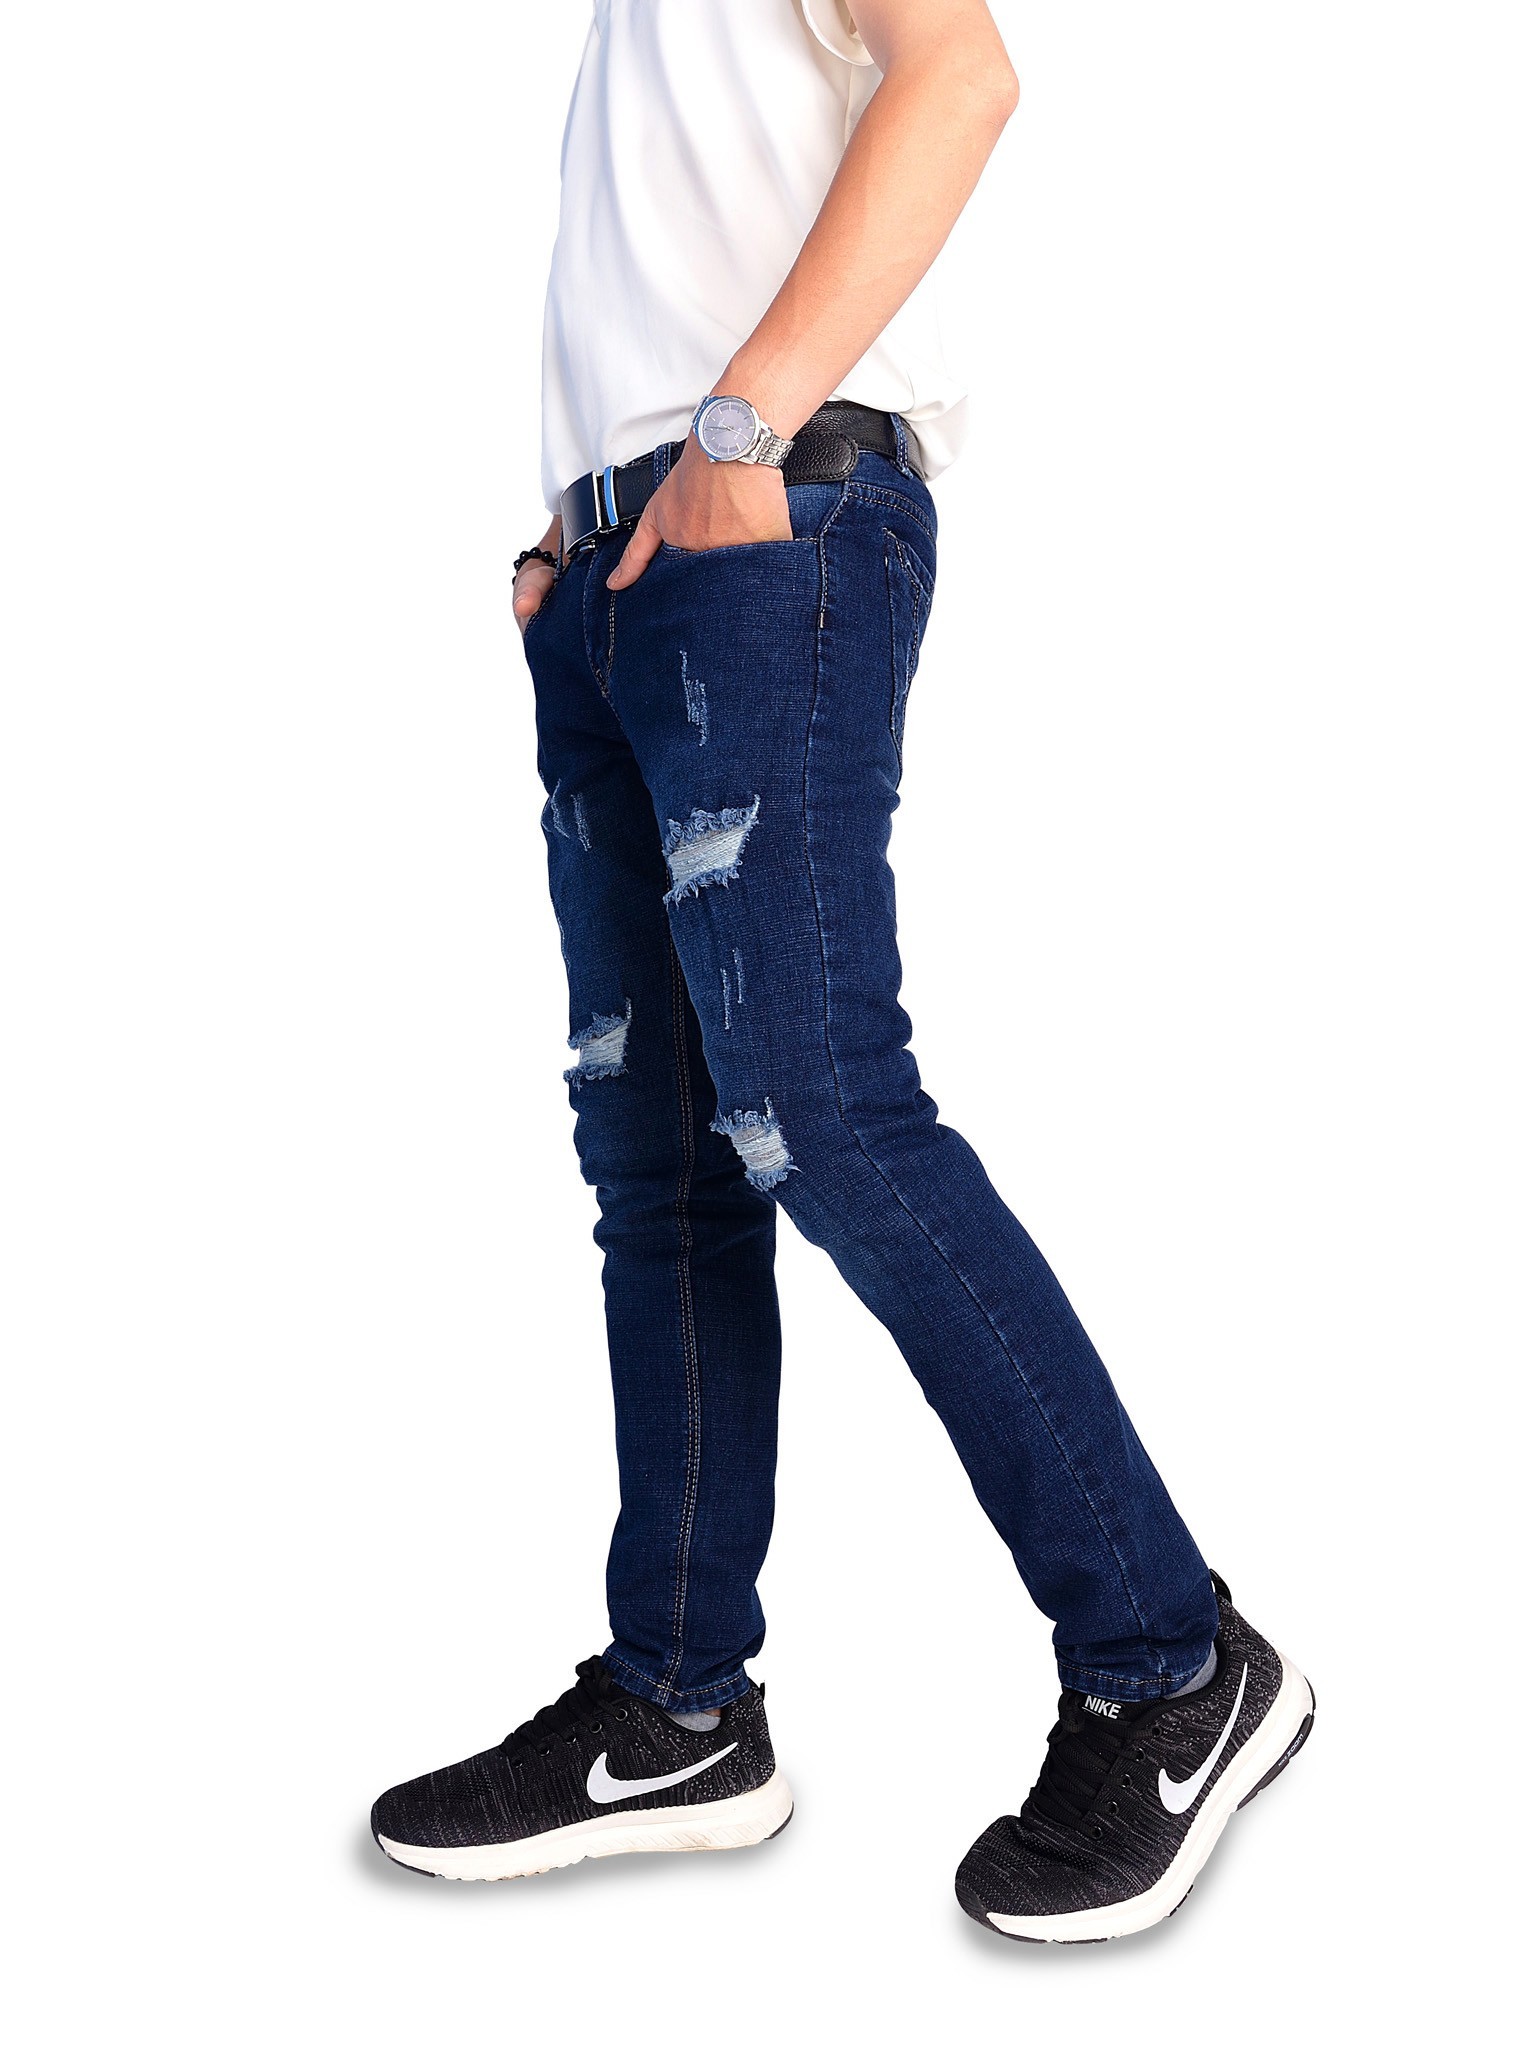 Mẹo phối đồ và bảo quản quần jeans nam rách gối cực chuẩn